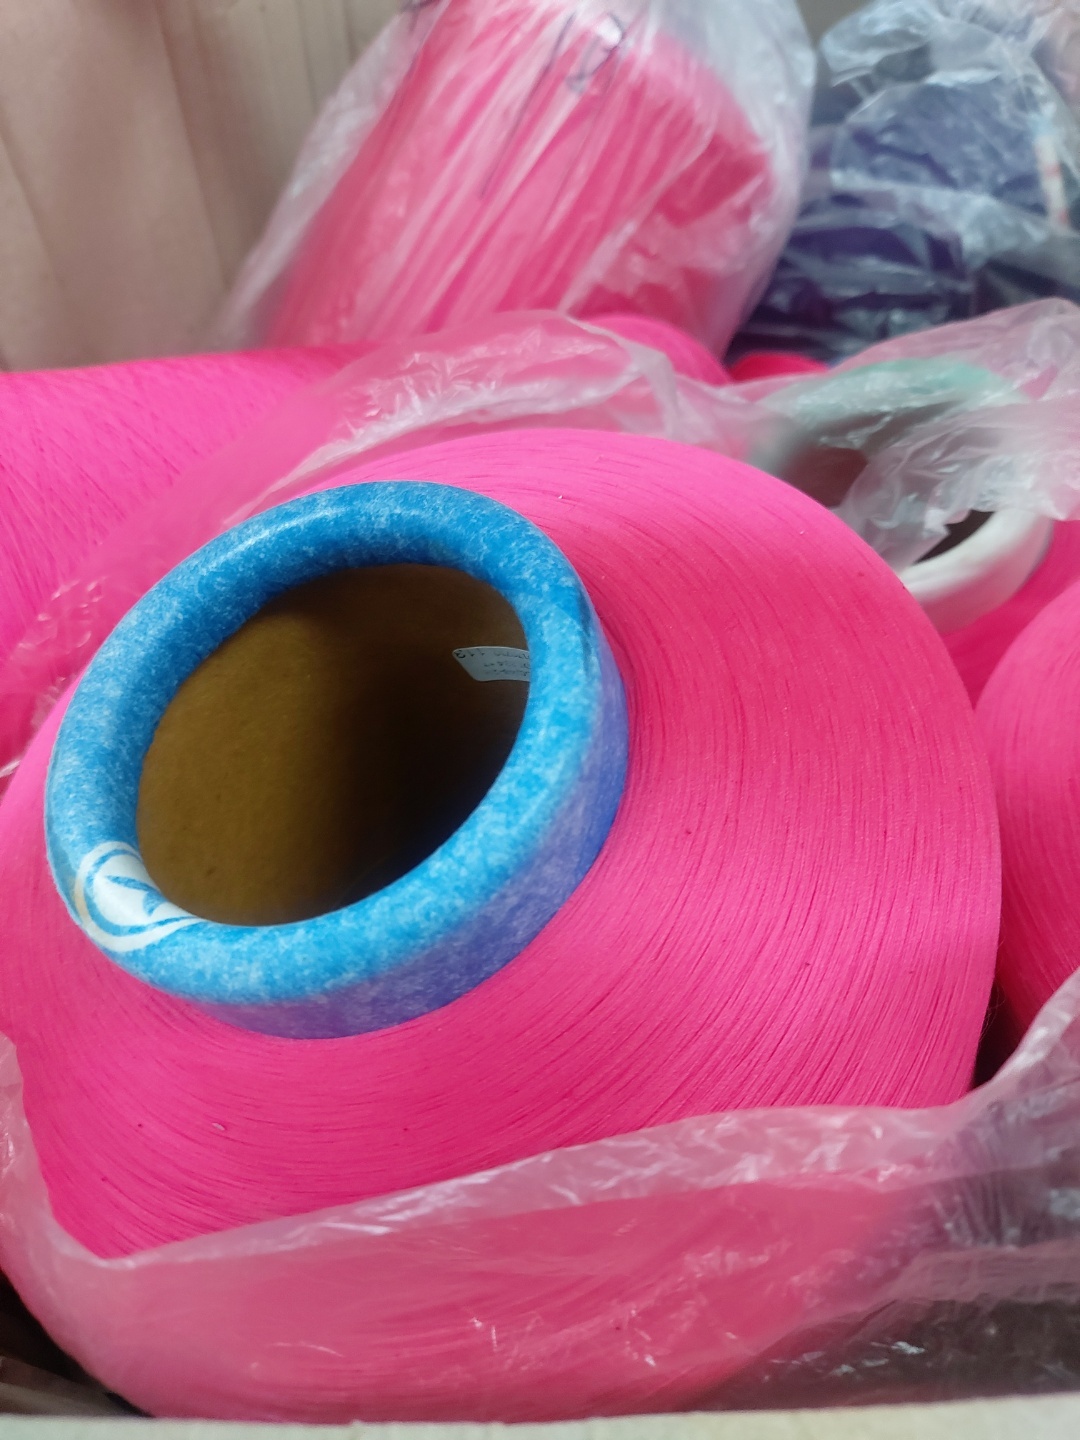 48761 - Dyed yarn stock Korea